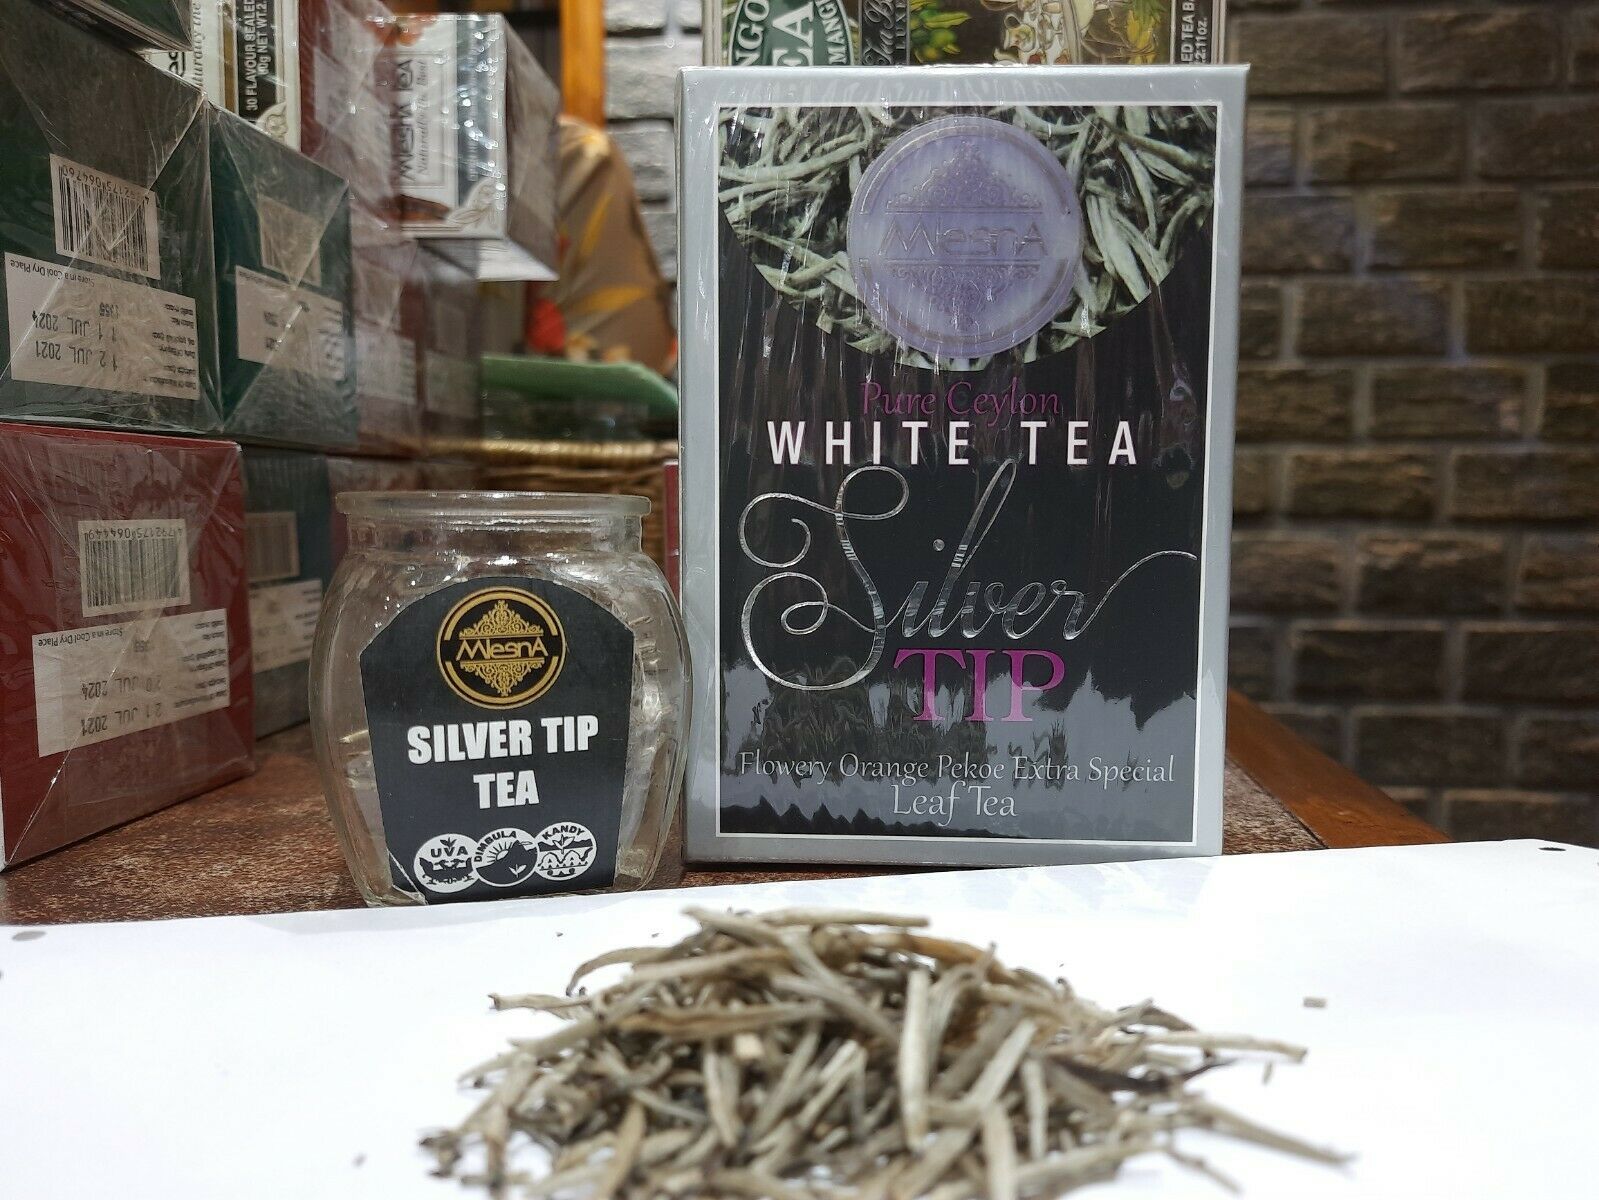 MLESNA PURE CEYLON PREMIUM WHITE TEA SILVER TIPS Special Leaf Tea - Sri Lanka - $29.60 - $49.40